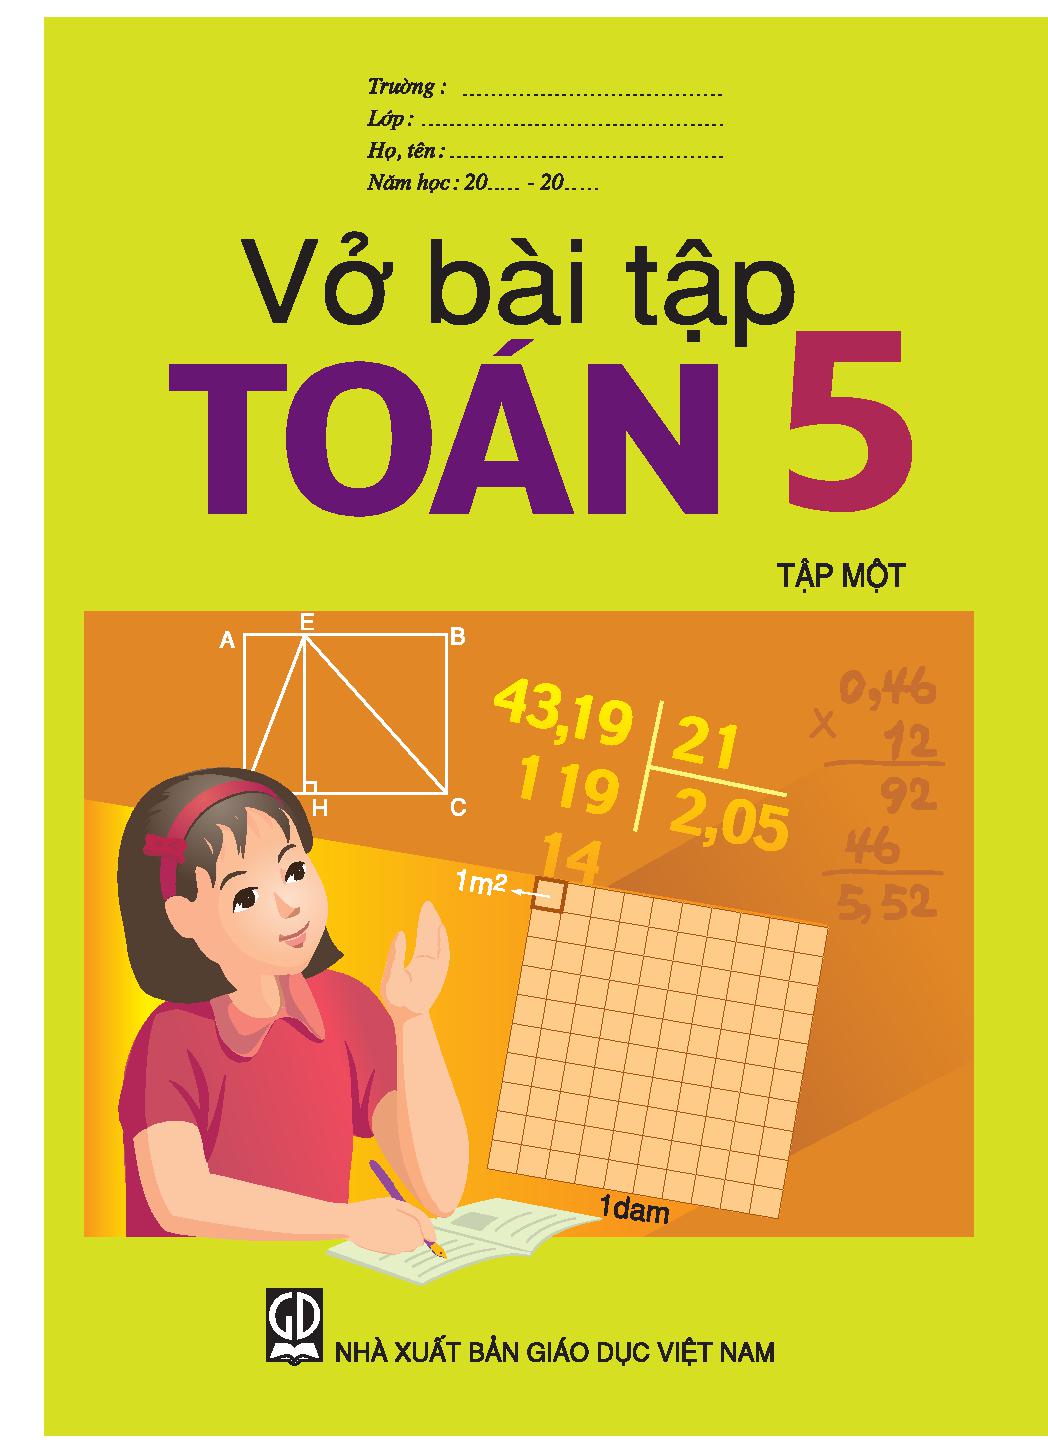 VBT toán 5T1 (C)